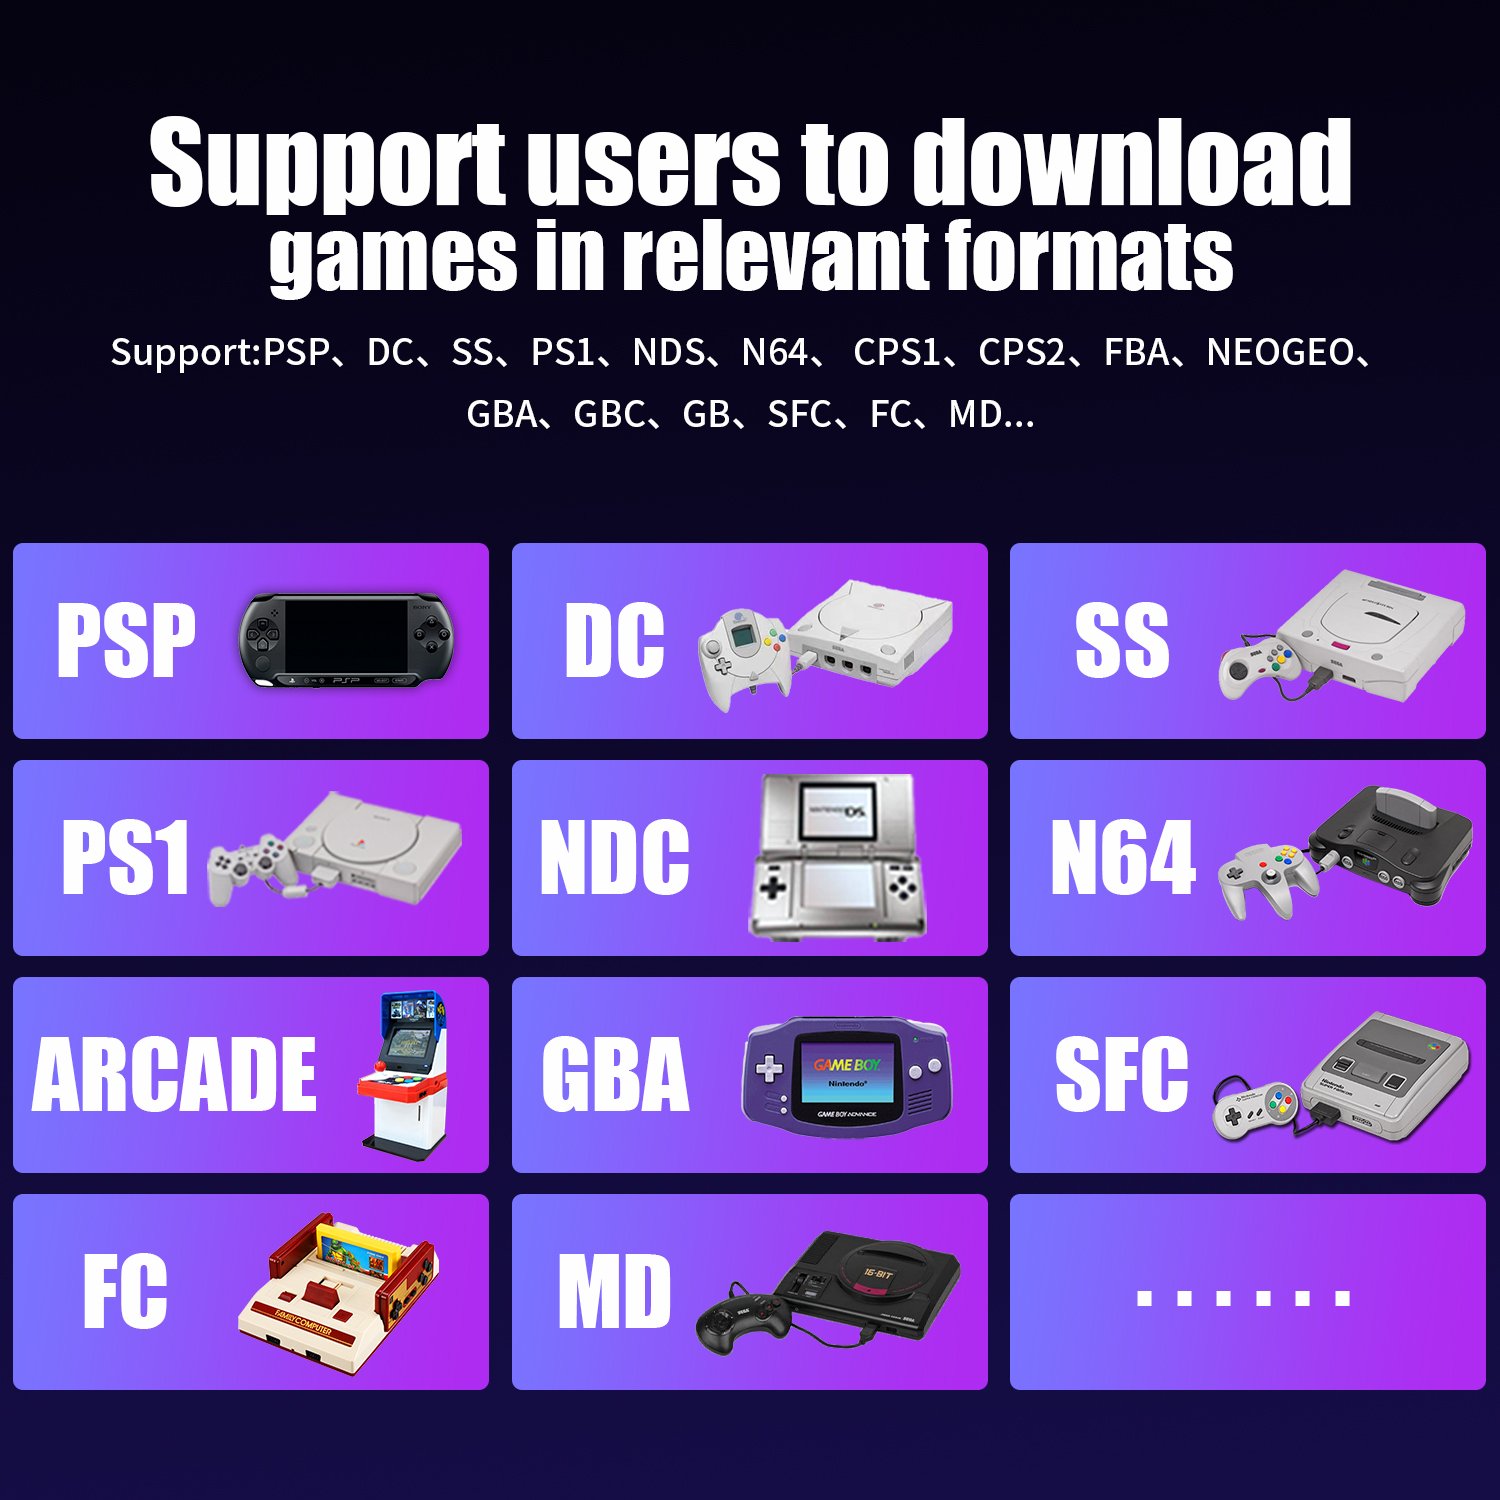 Das RG353P unterstützt die Benutzer beim Herunterladen von Spielen in den entsprechenden Formaten